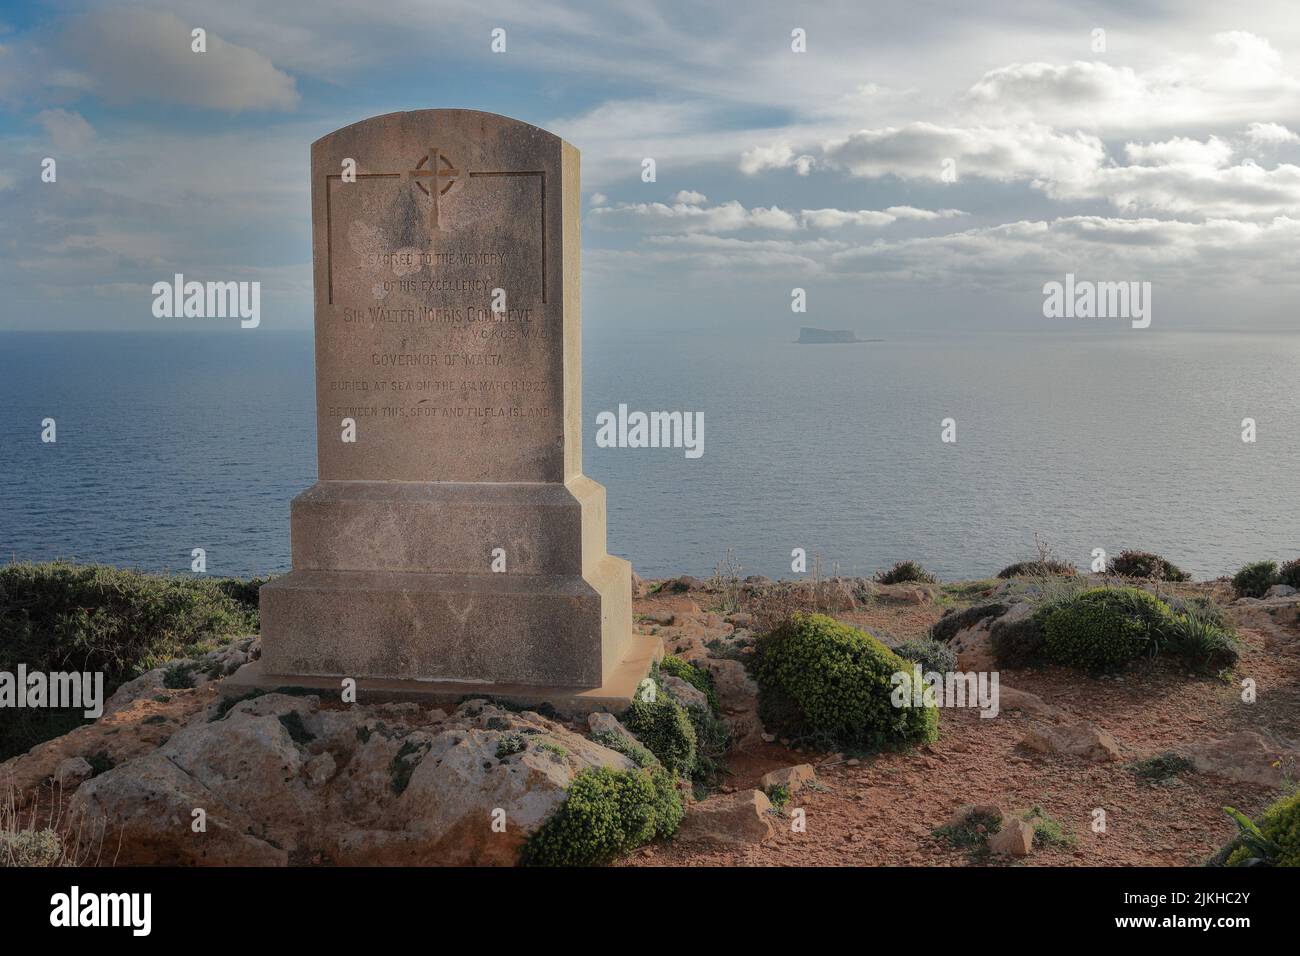 Sir Walter Norris Congreve Memorial, Governatore di Malta morto in carica e sepolto in mare tra questo punto e l'isola di Filfla sullo sfondo. Foto Stock